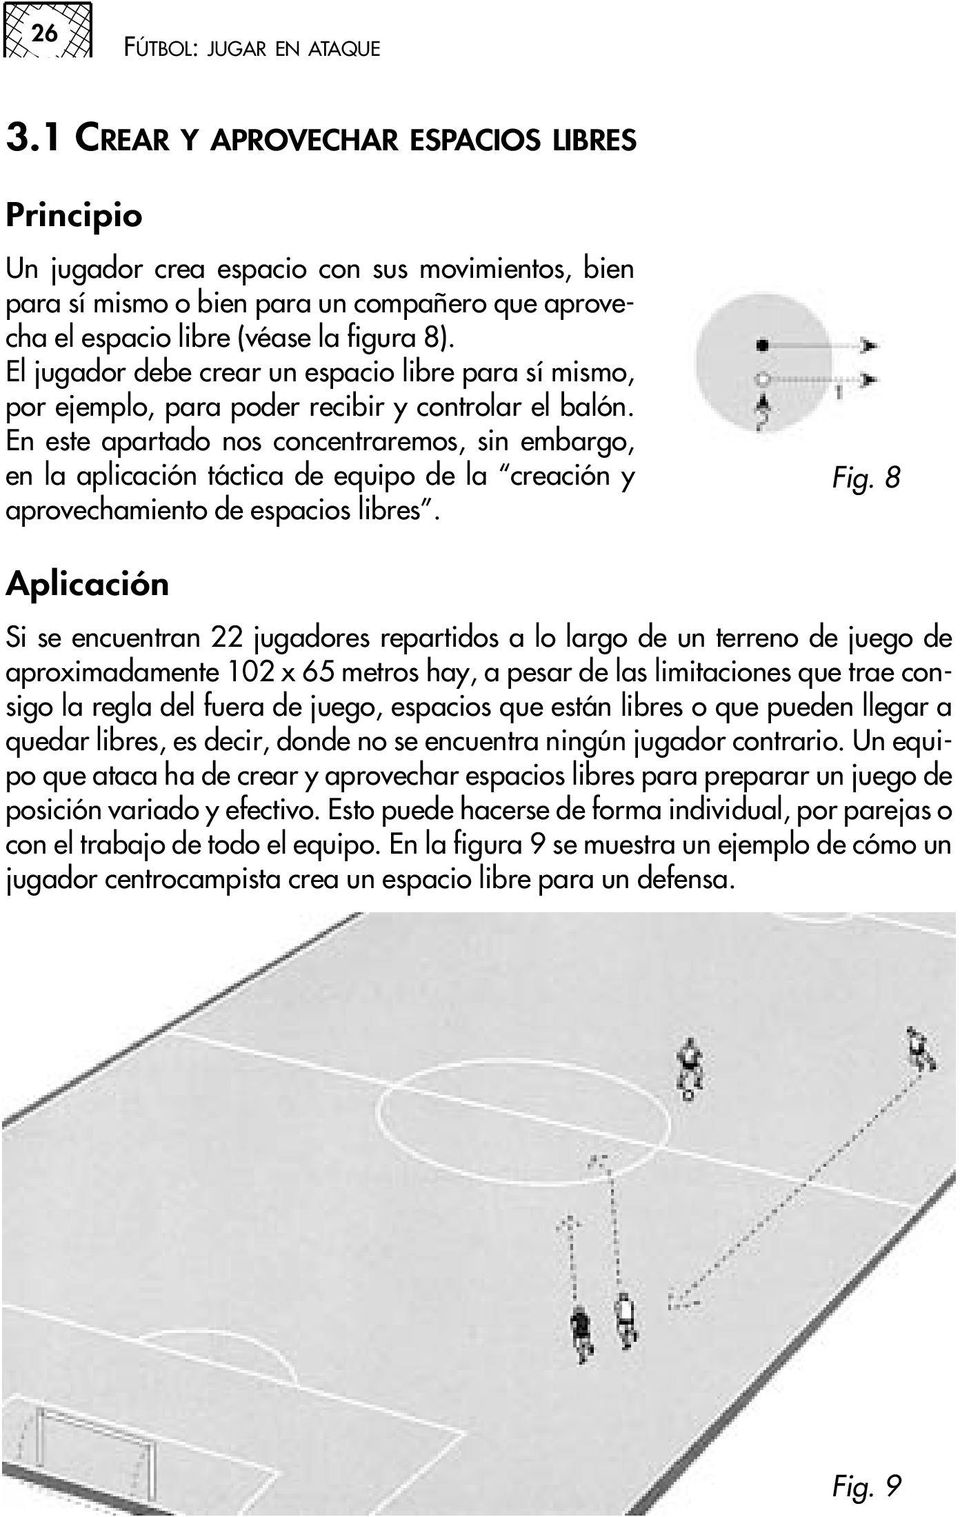 El jugador debe crear un espacio libre para sí mismo, por ejemplo, para poder recibir y controlar el balón.